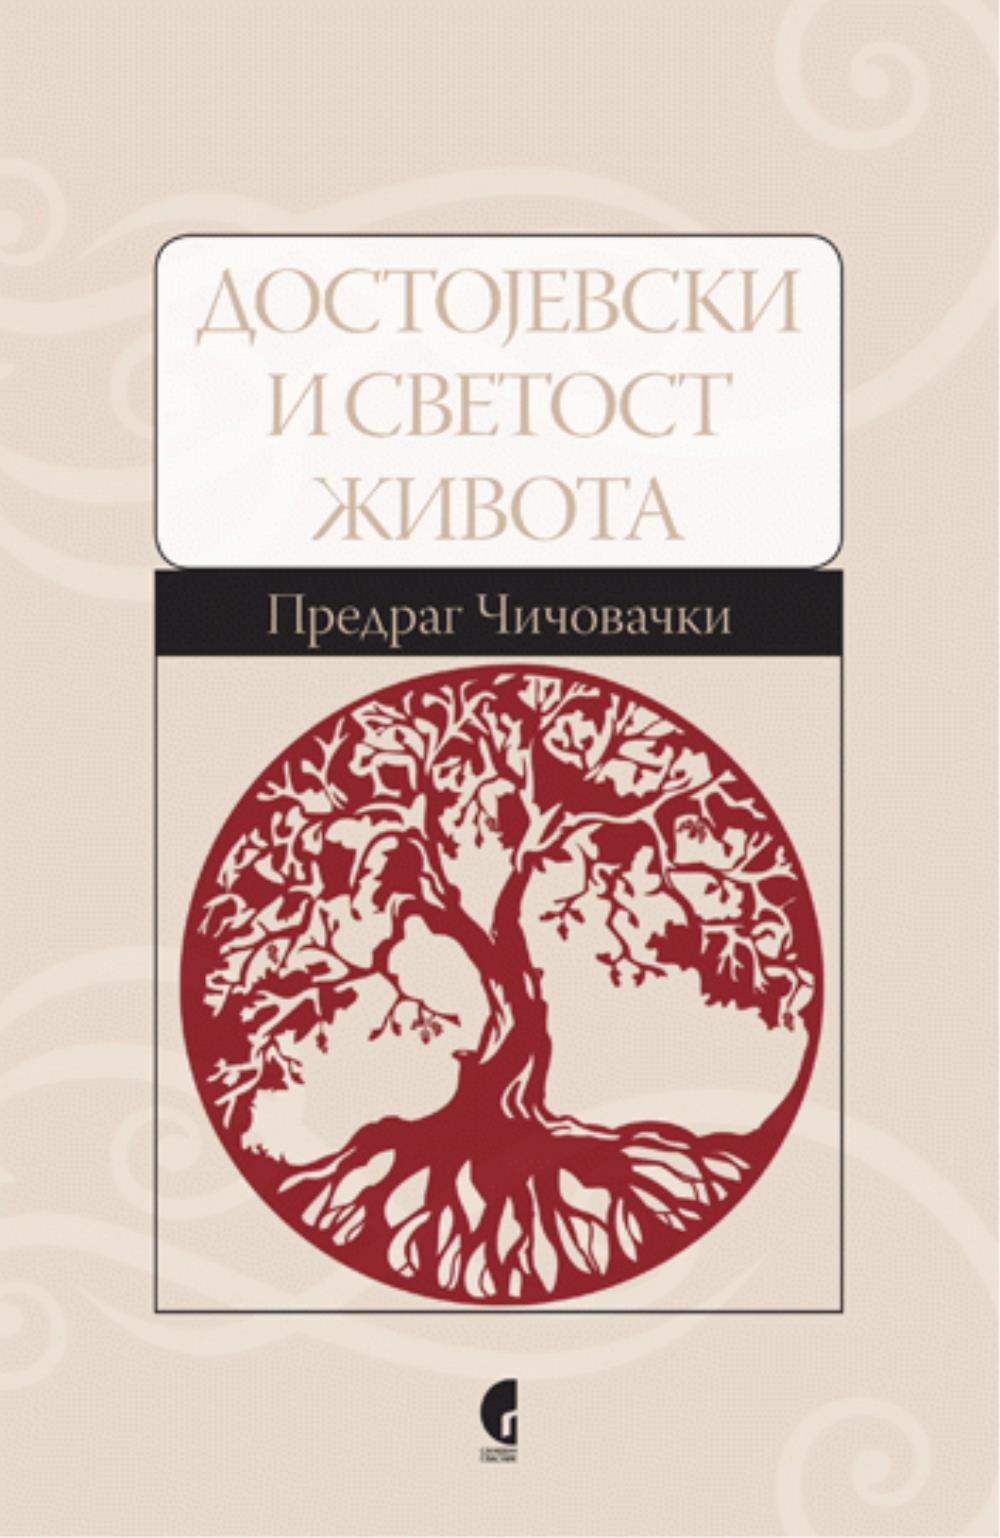 200 godina od rođenja Dostojevskog - Naš gost Predrag Čičovački (SAD)